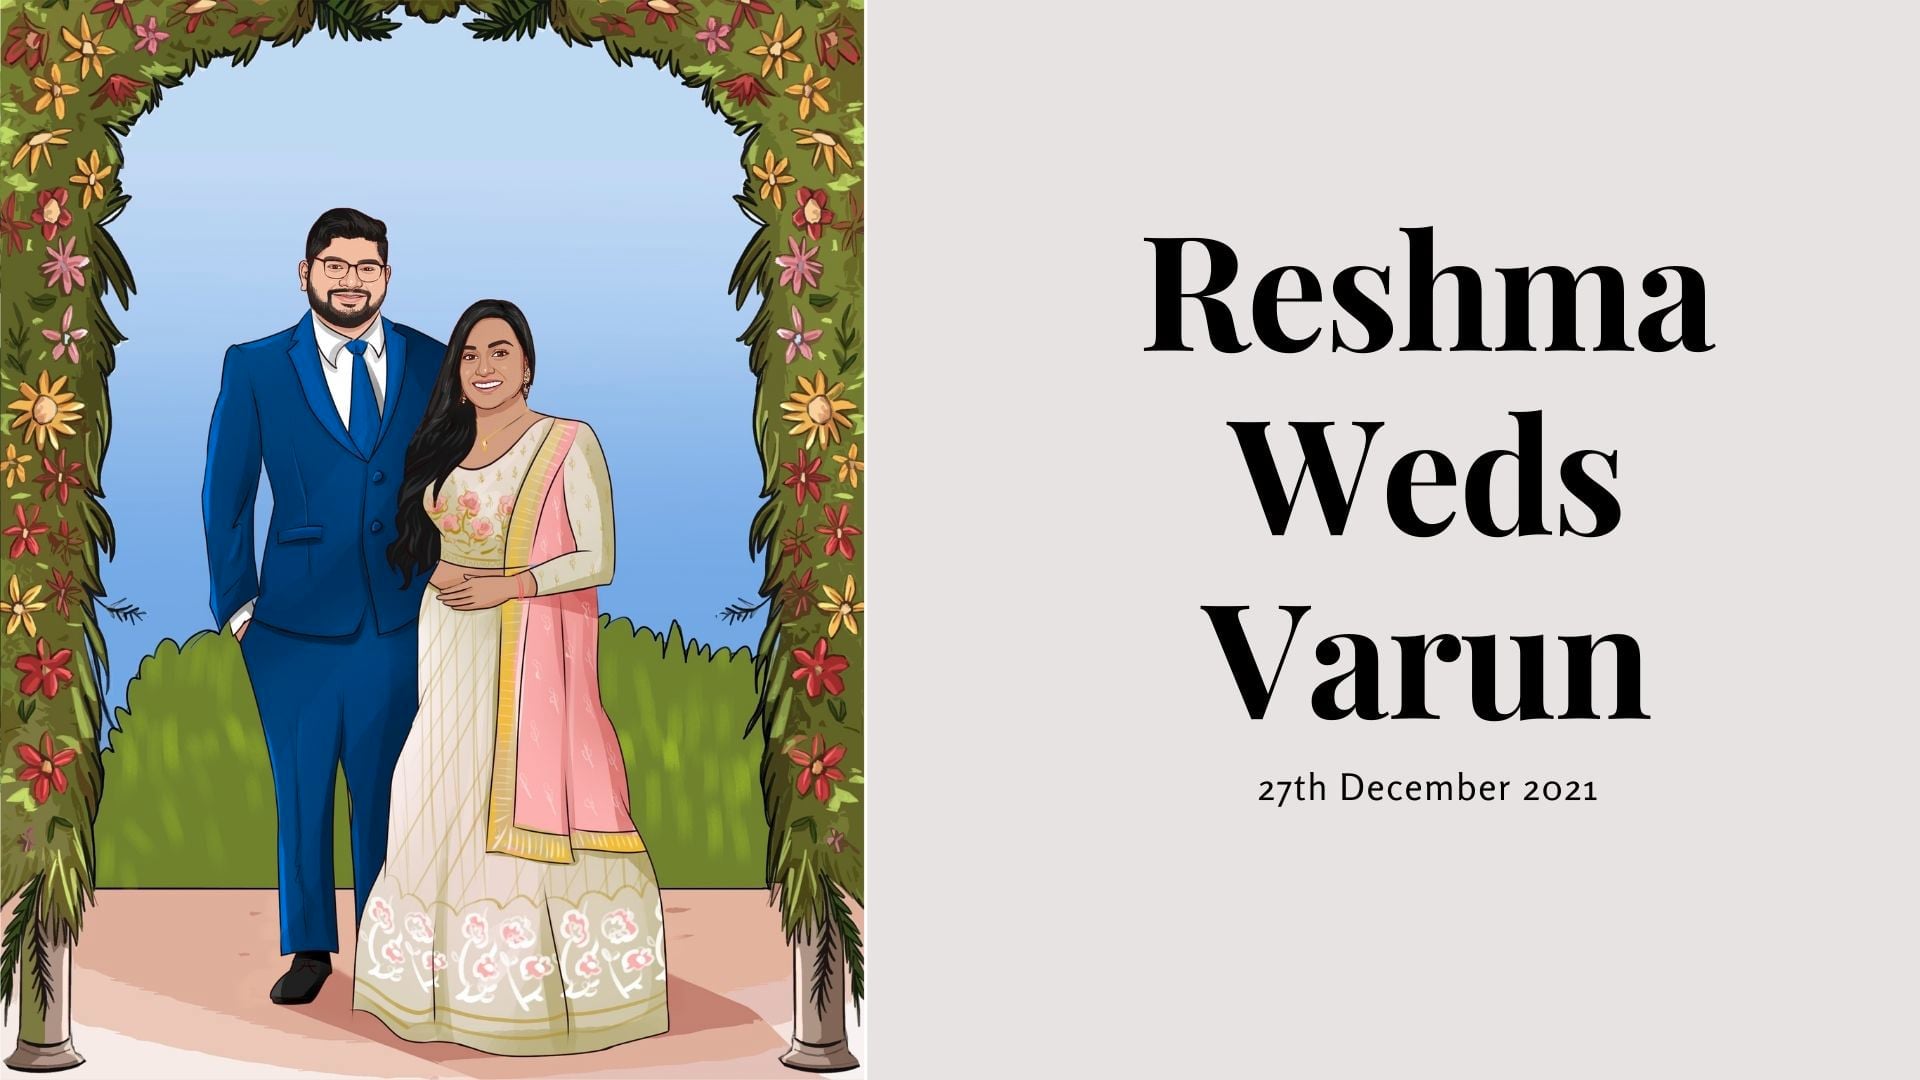 Wedding of Reshma & Varun - Ceremony